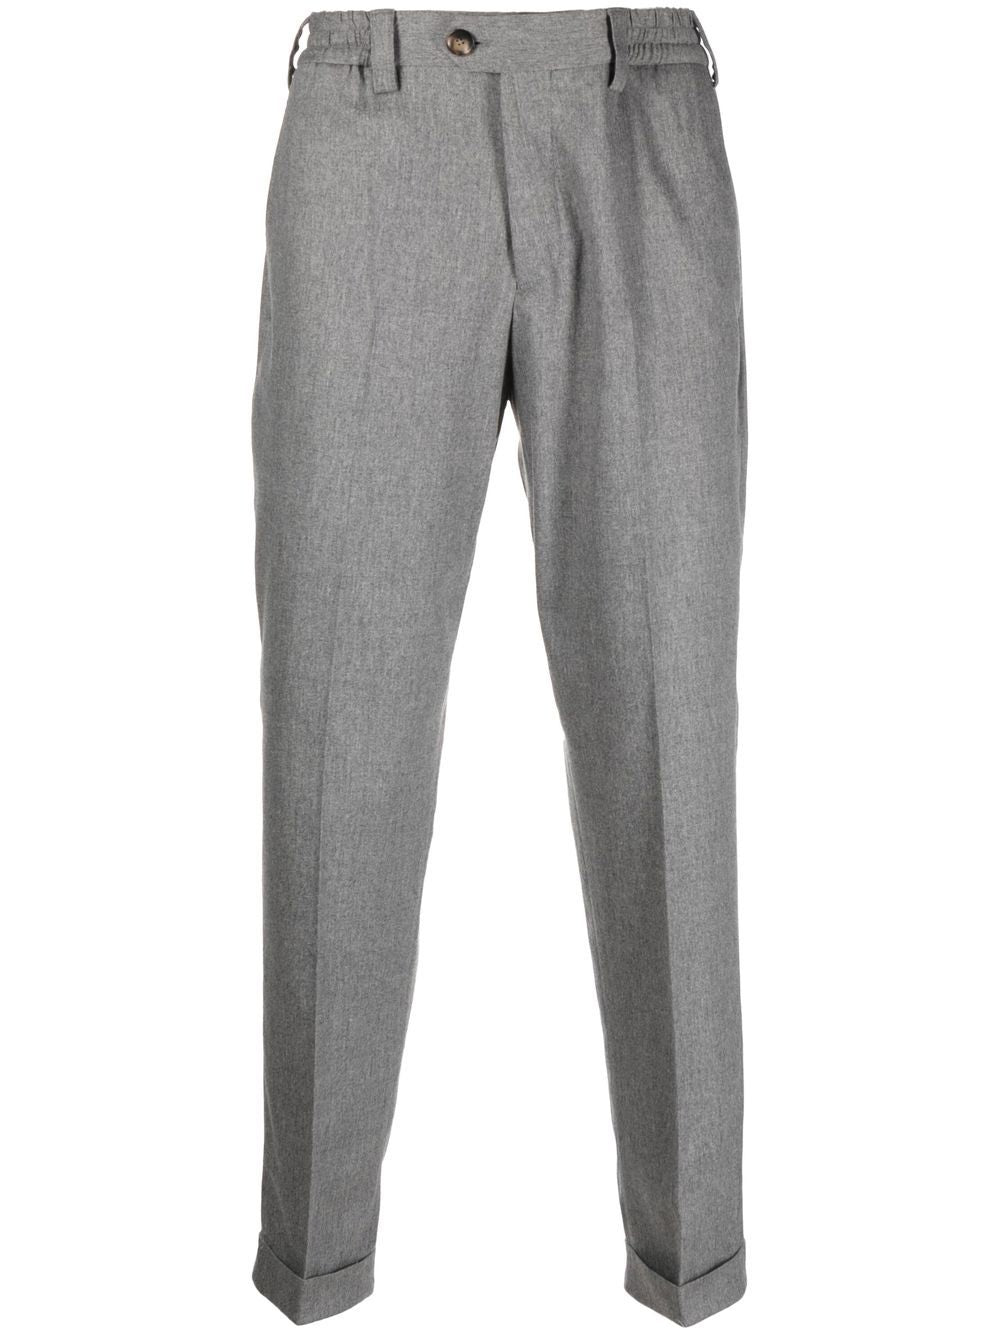 Pantalone rebel crop grigio